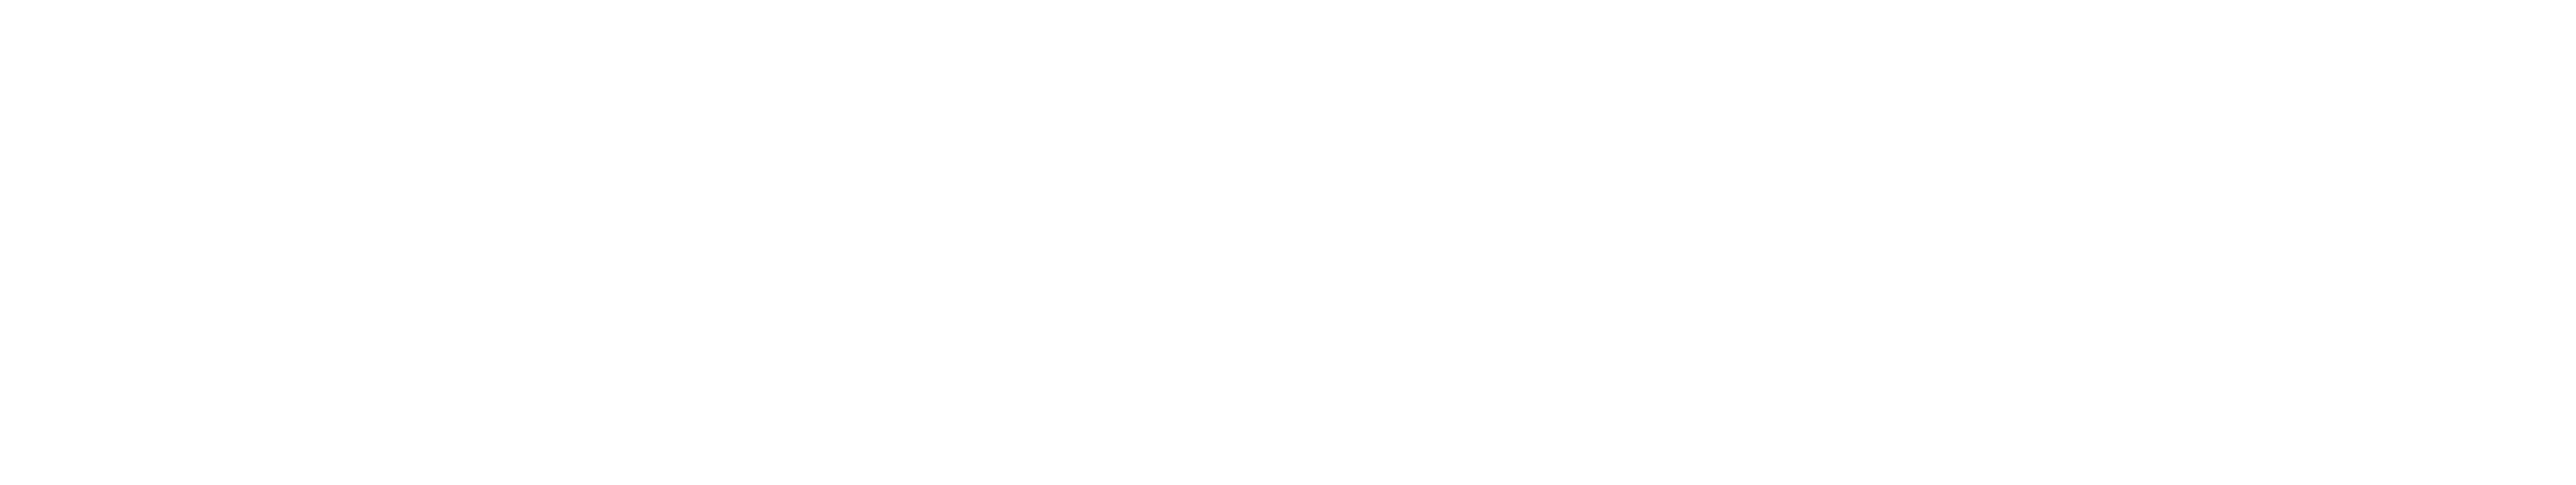 pictogramme ovins, bovins, caprins, abeilles